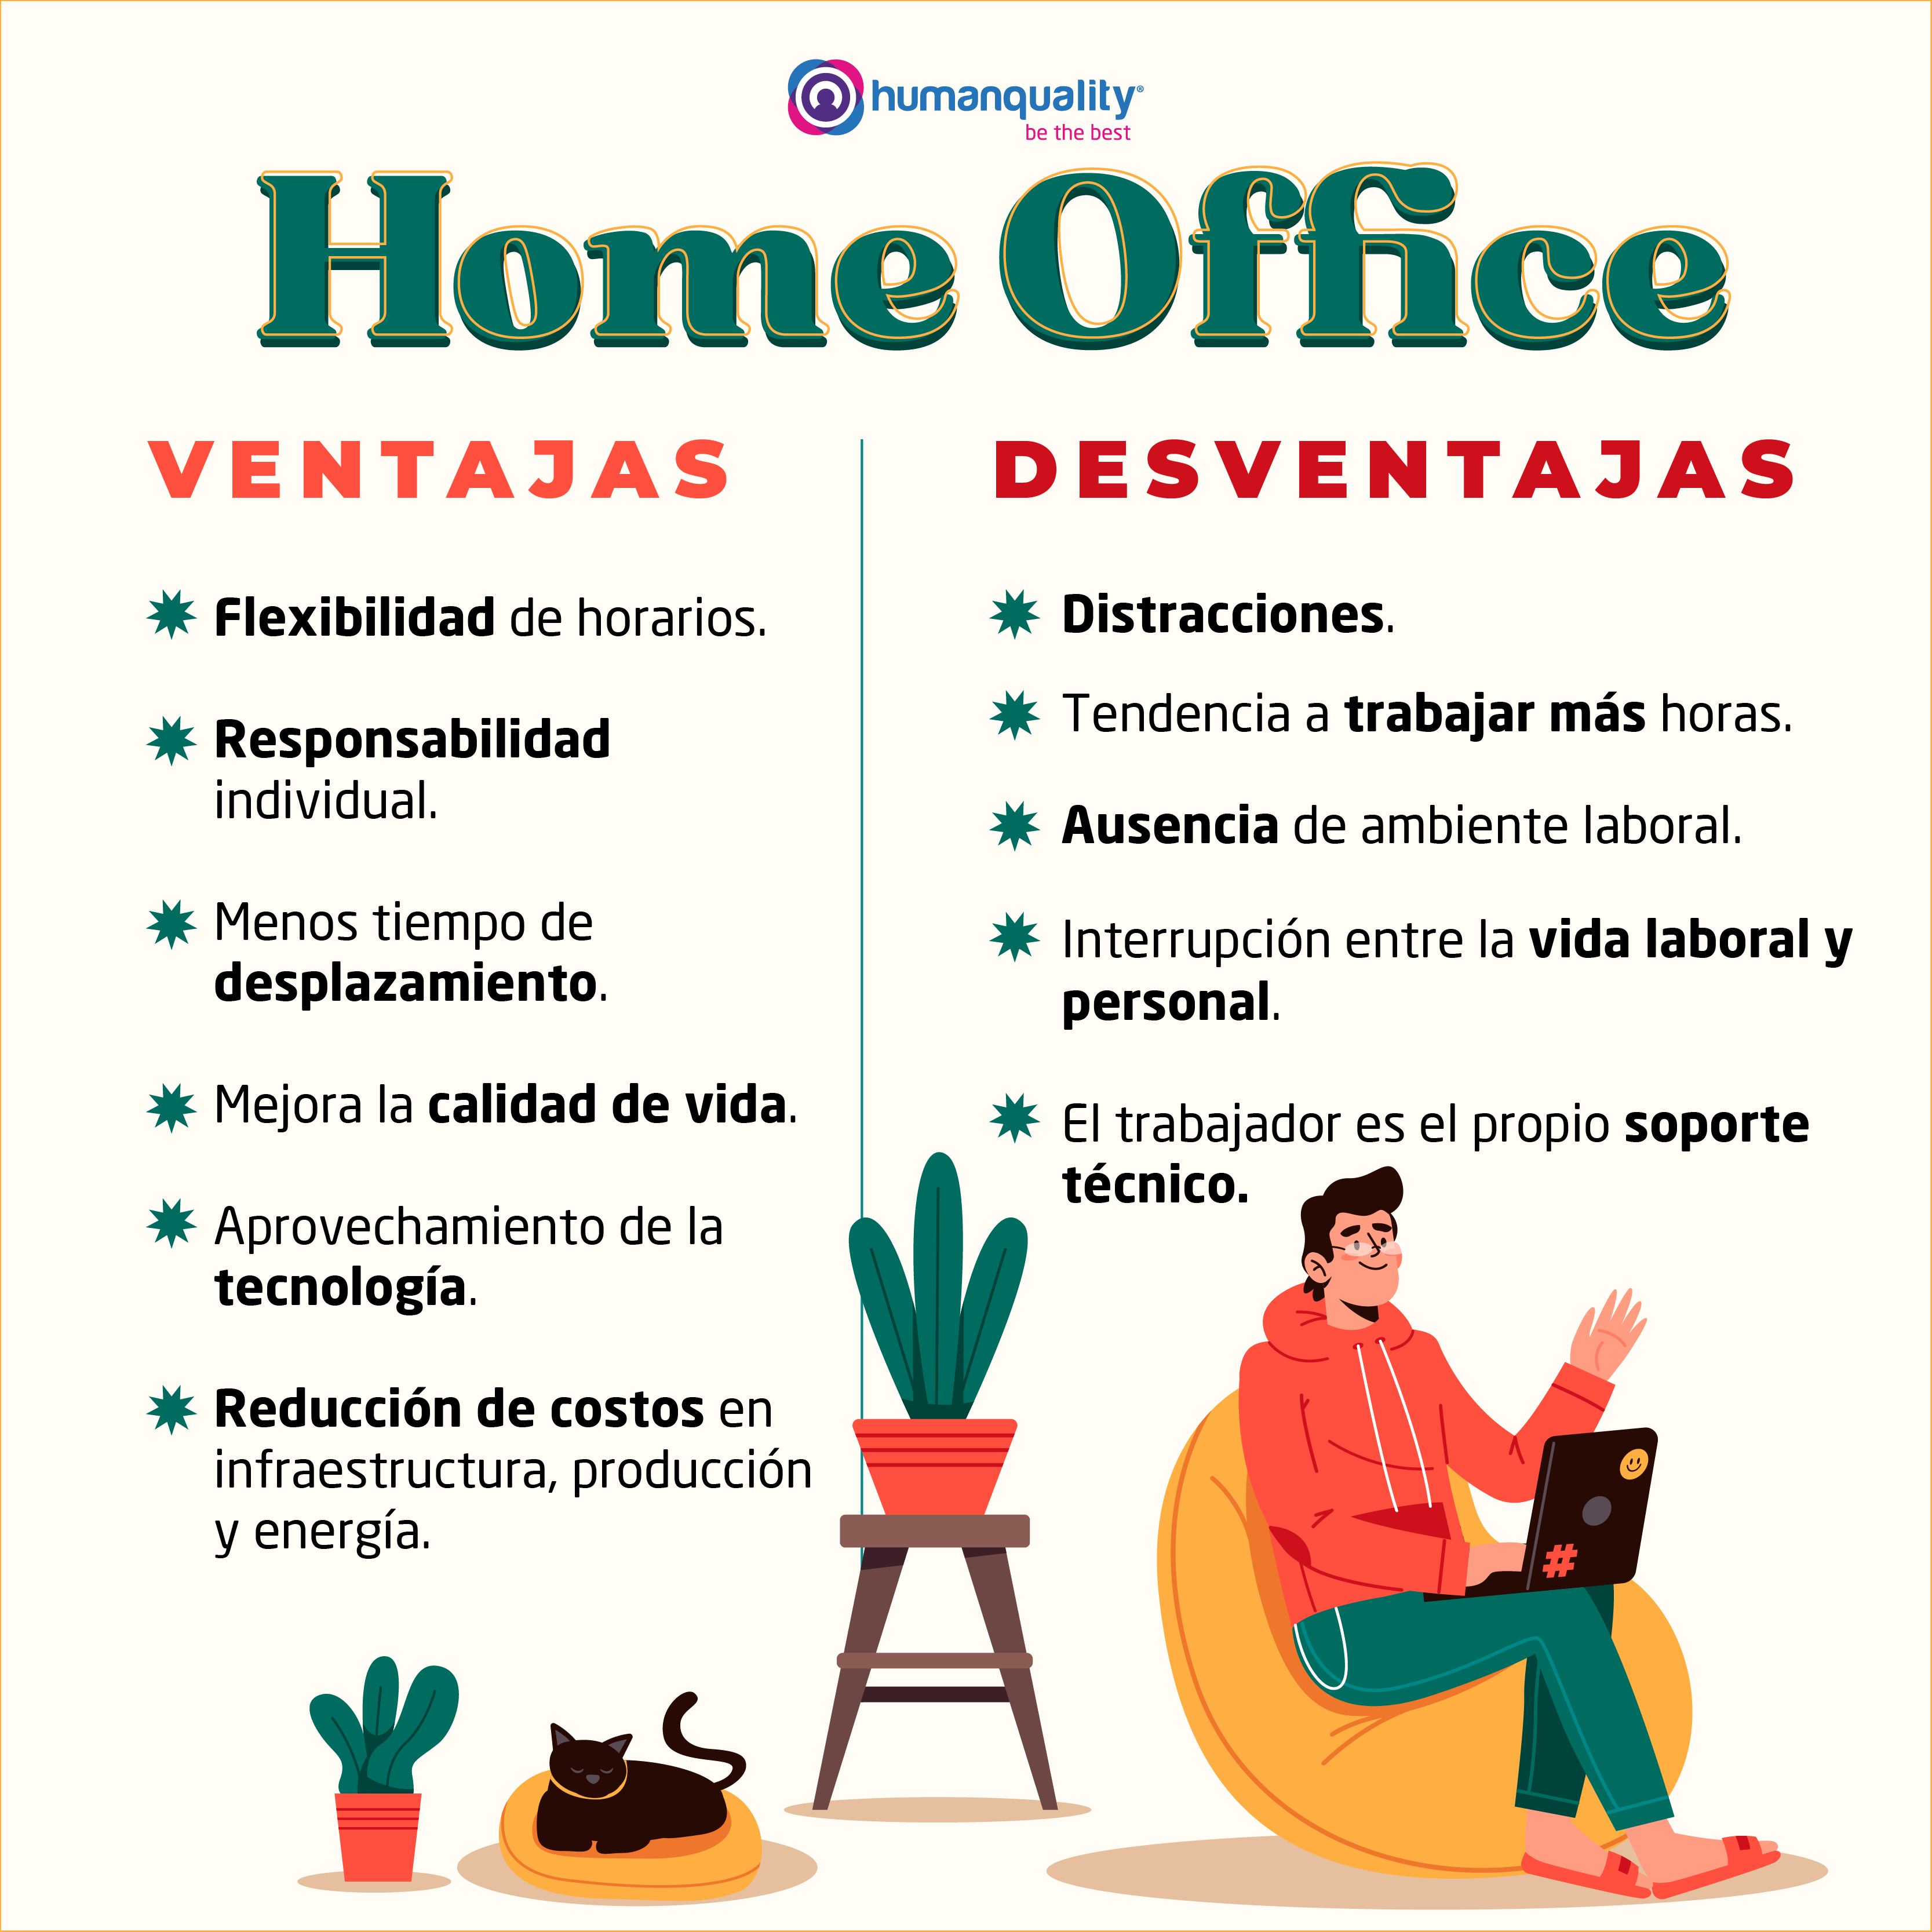 Home Office vs Presencial ¿Cuál es más productivo?